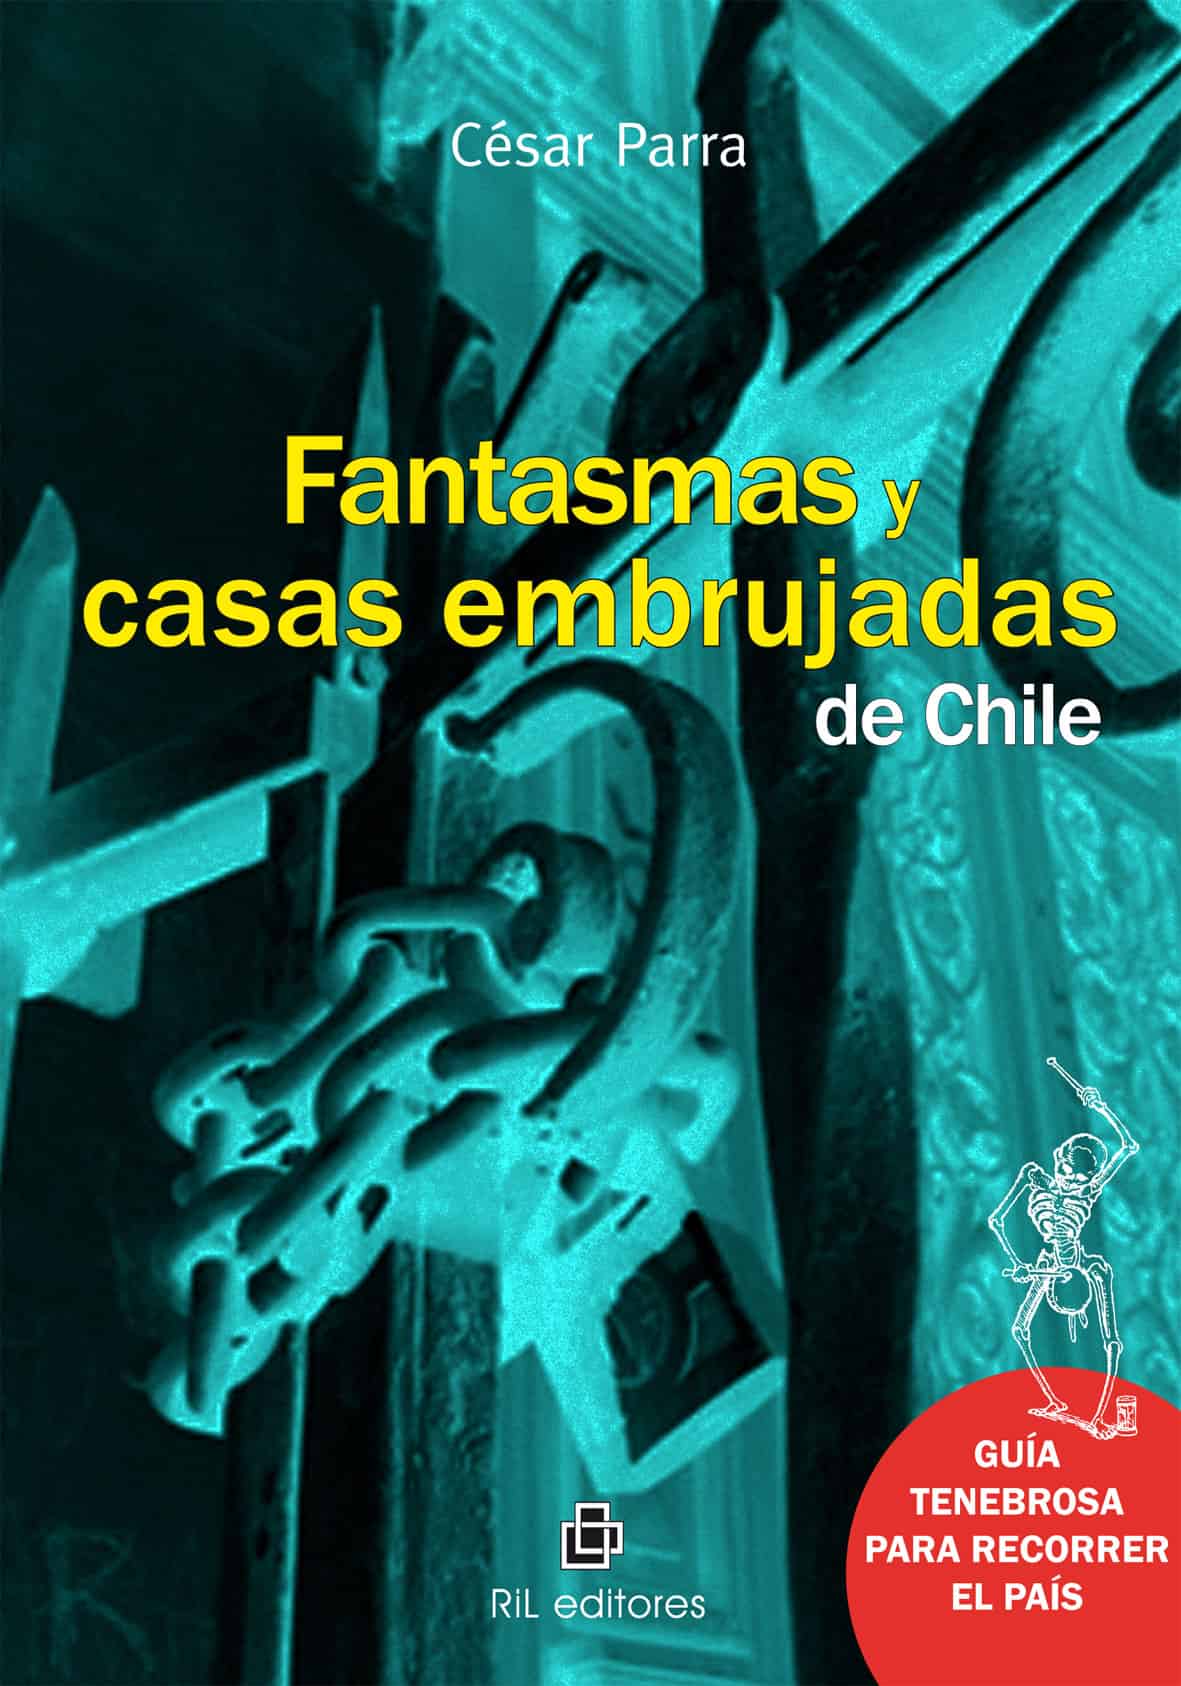 Fantasmas y casas embrujadas de Chile - RIL Editores